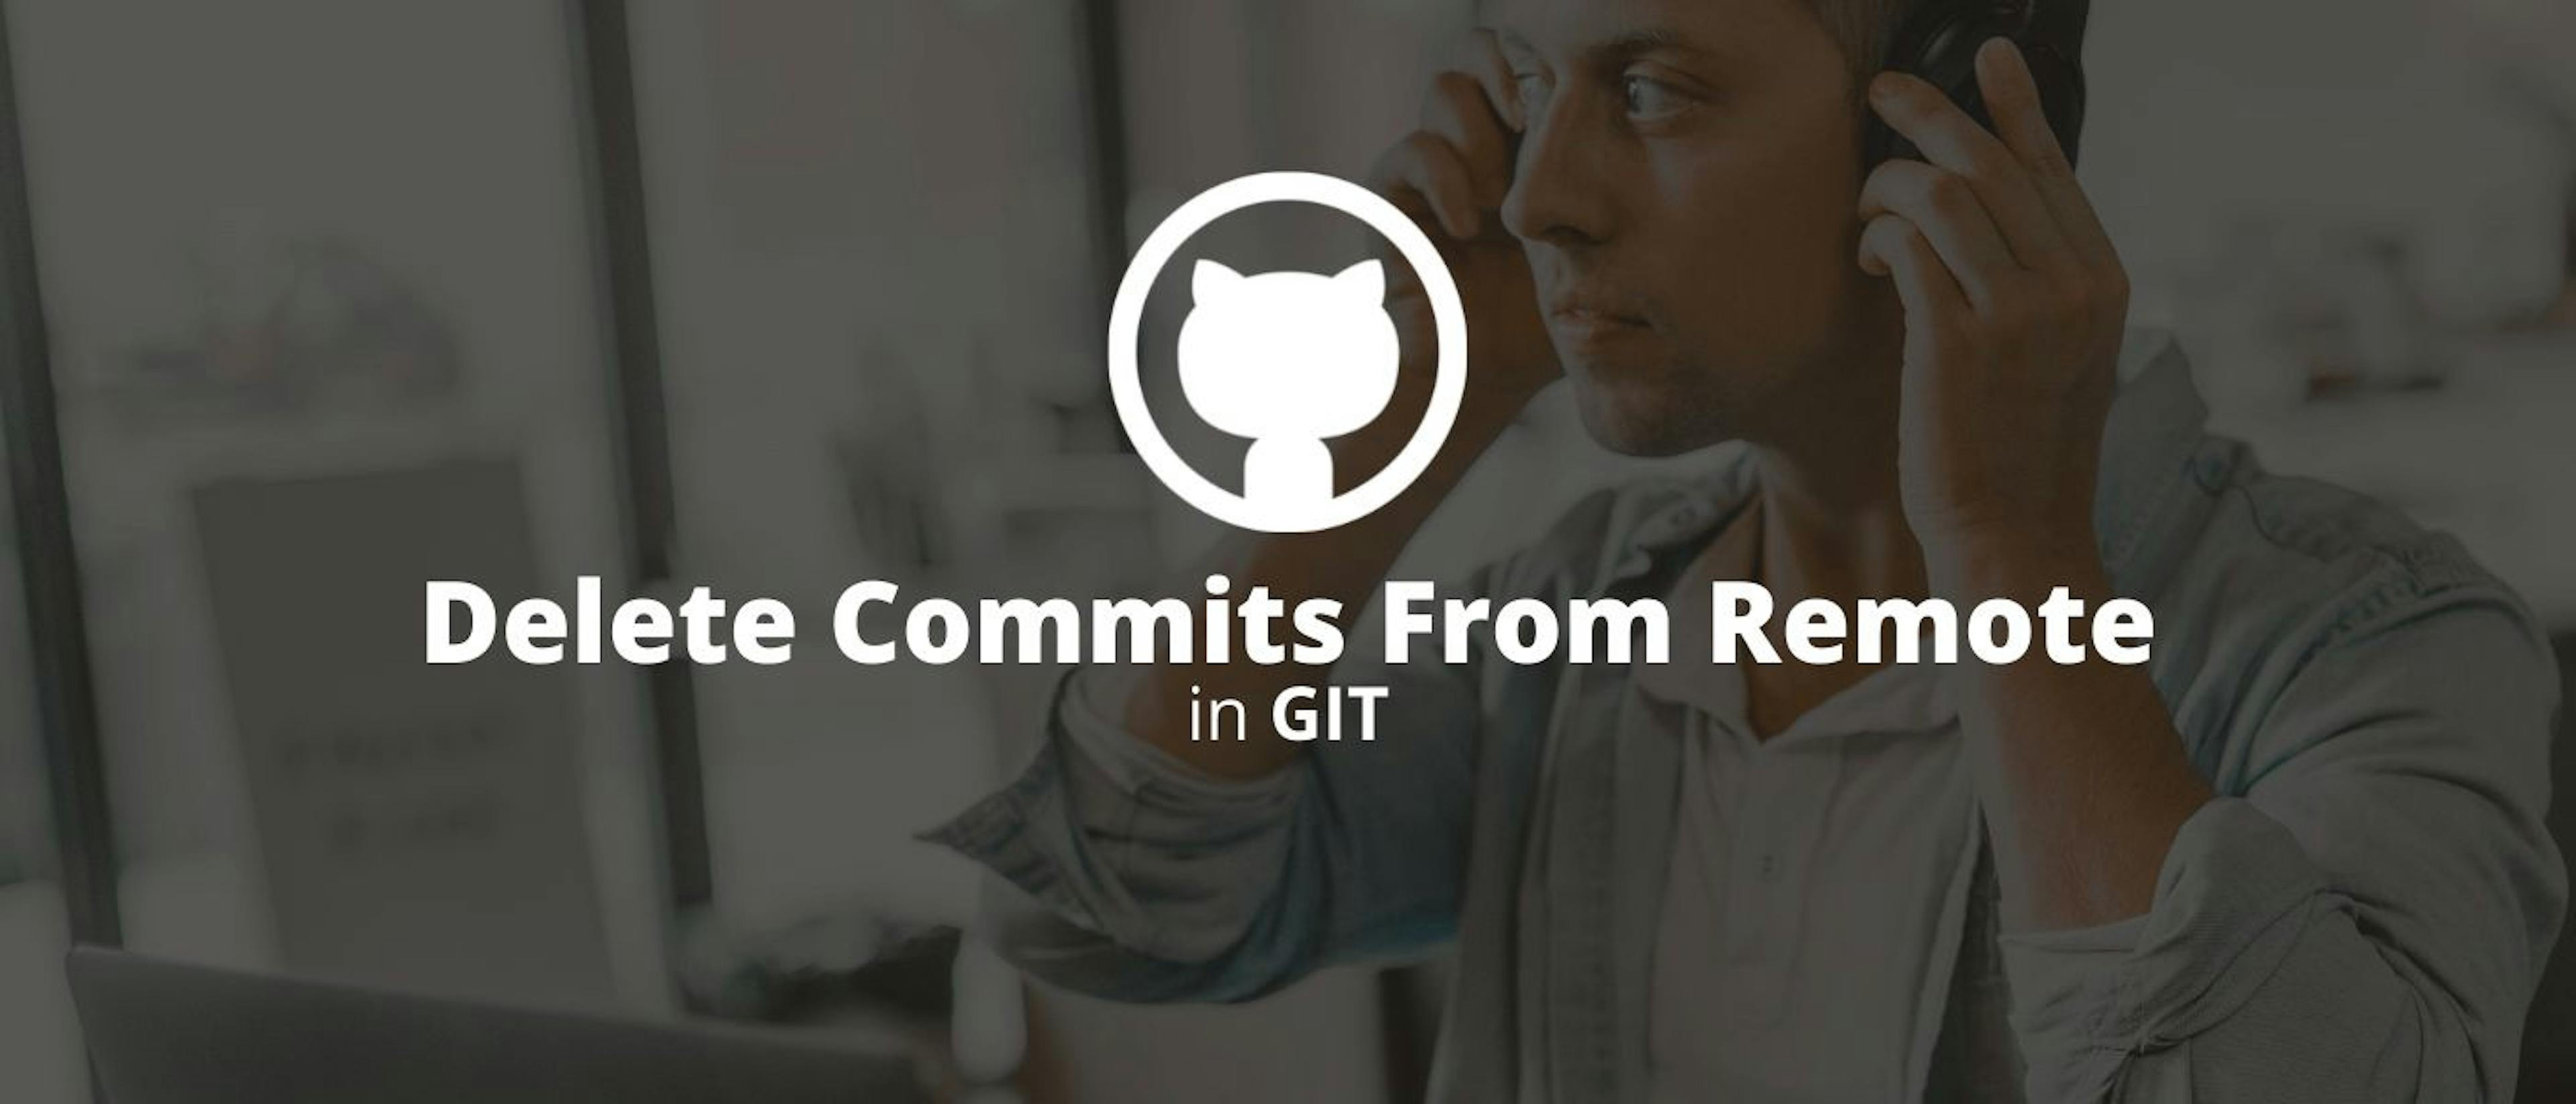 featured image - So löschen Sie Commits aus der Ferne in Git